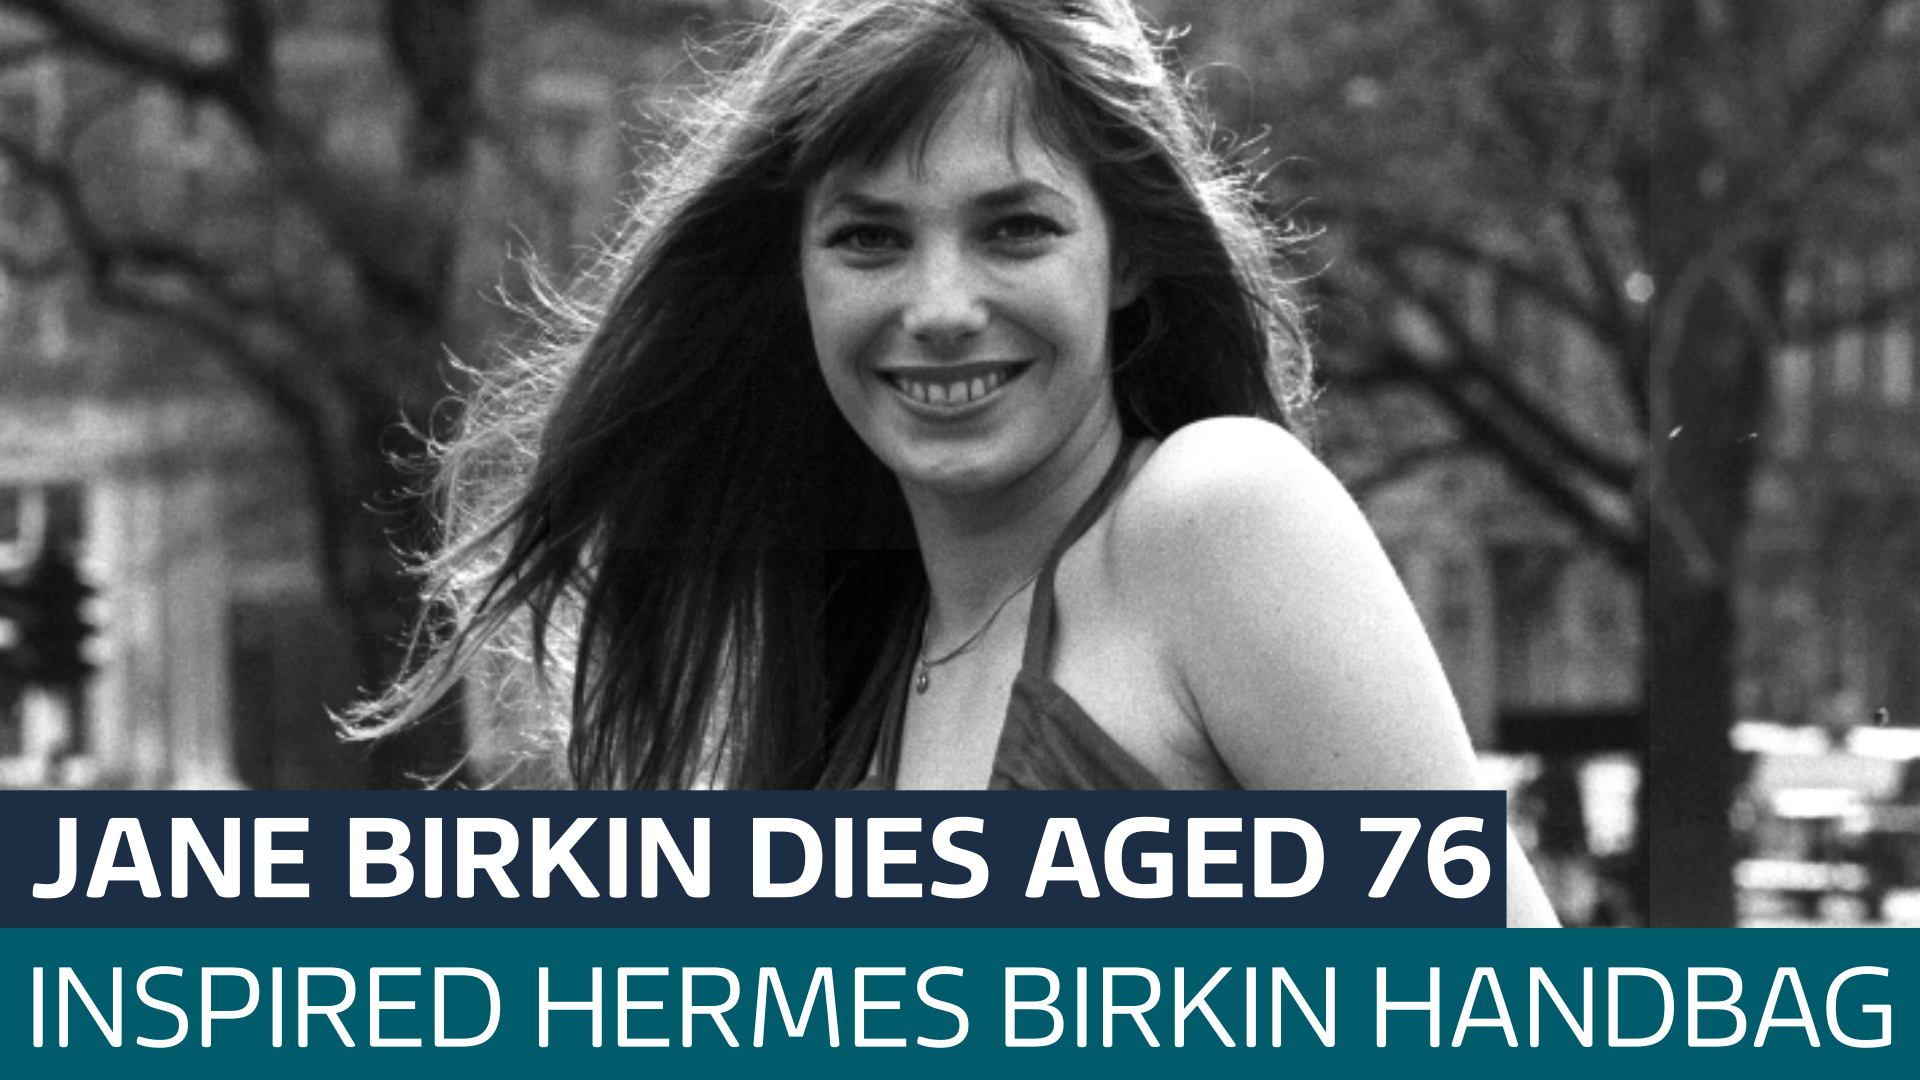 Actress Jane Birkin dies at 76!